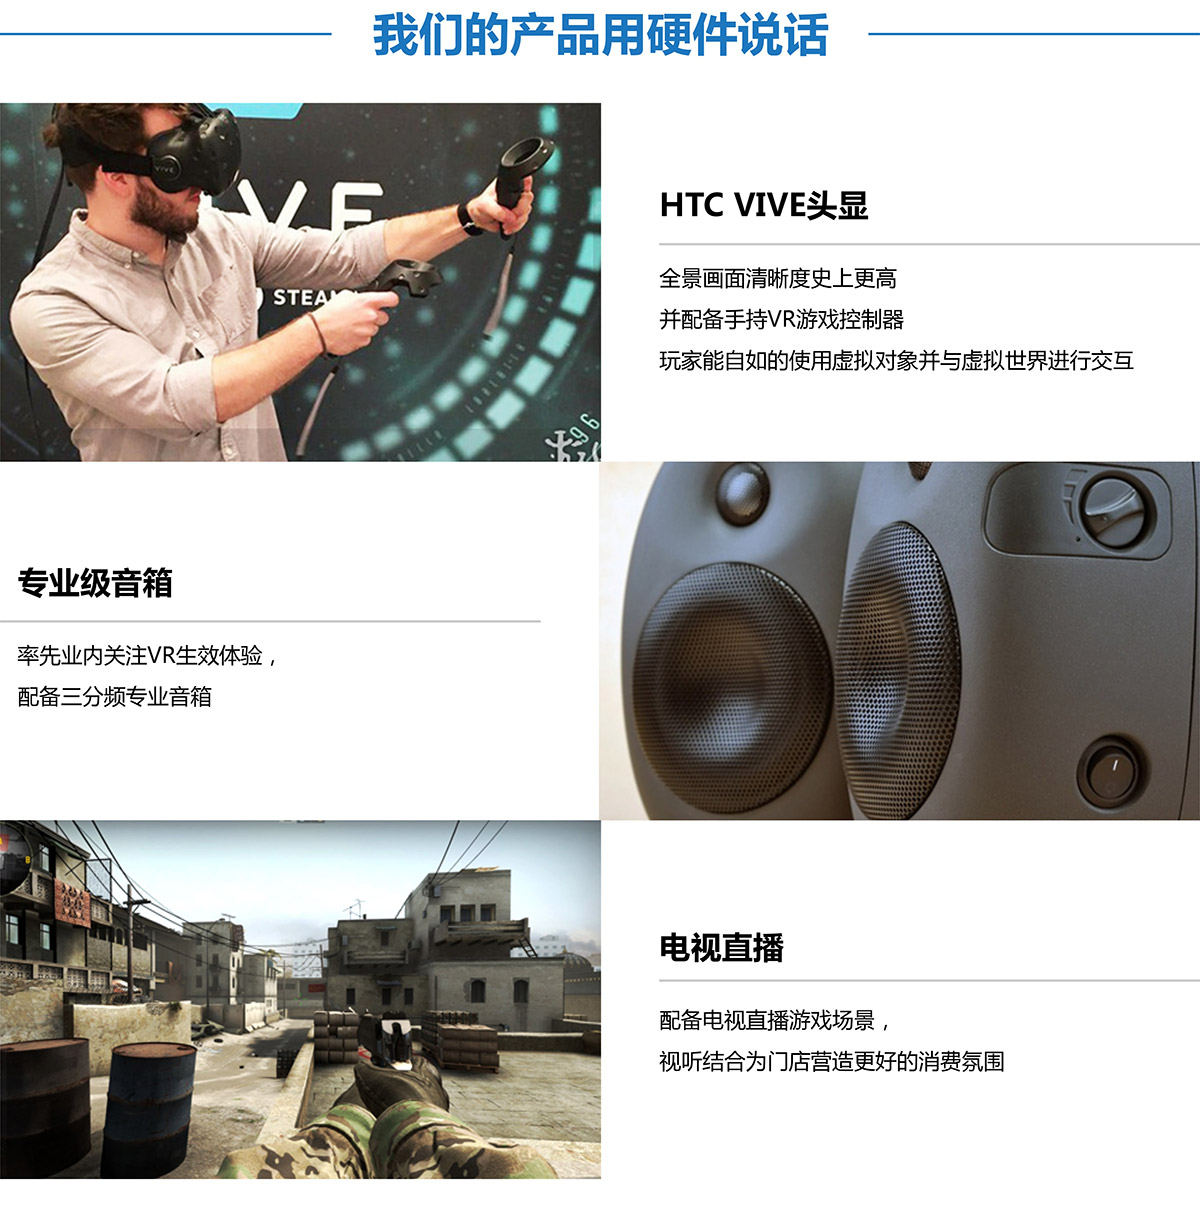 VR探索用硬件说话.jpg